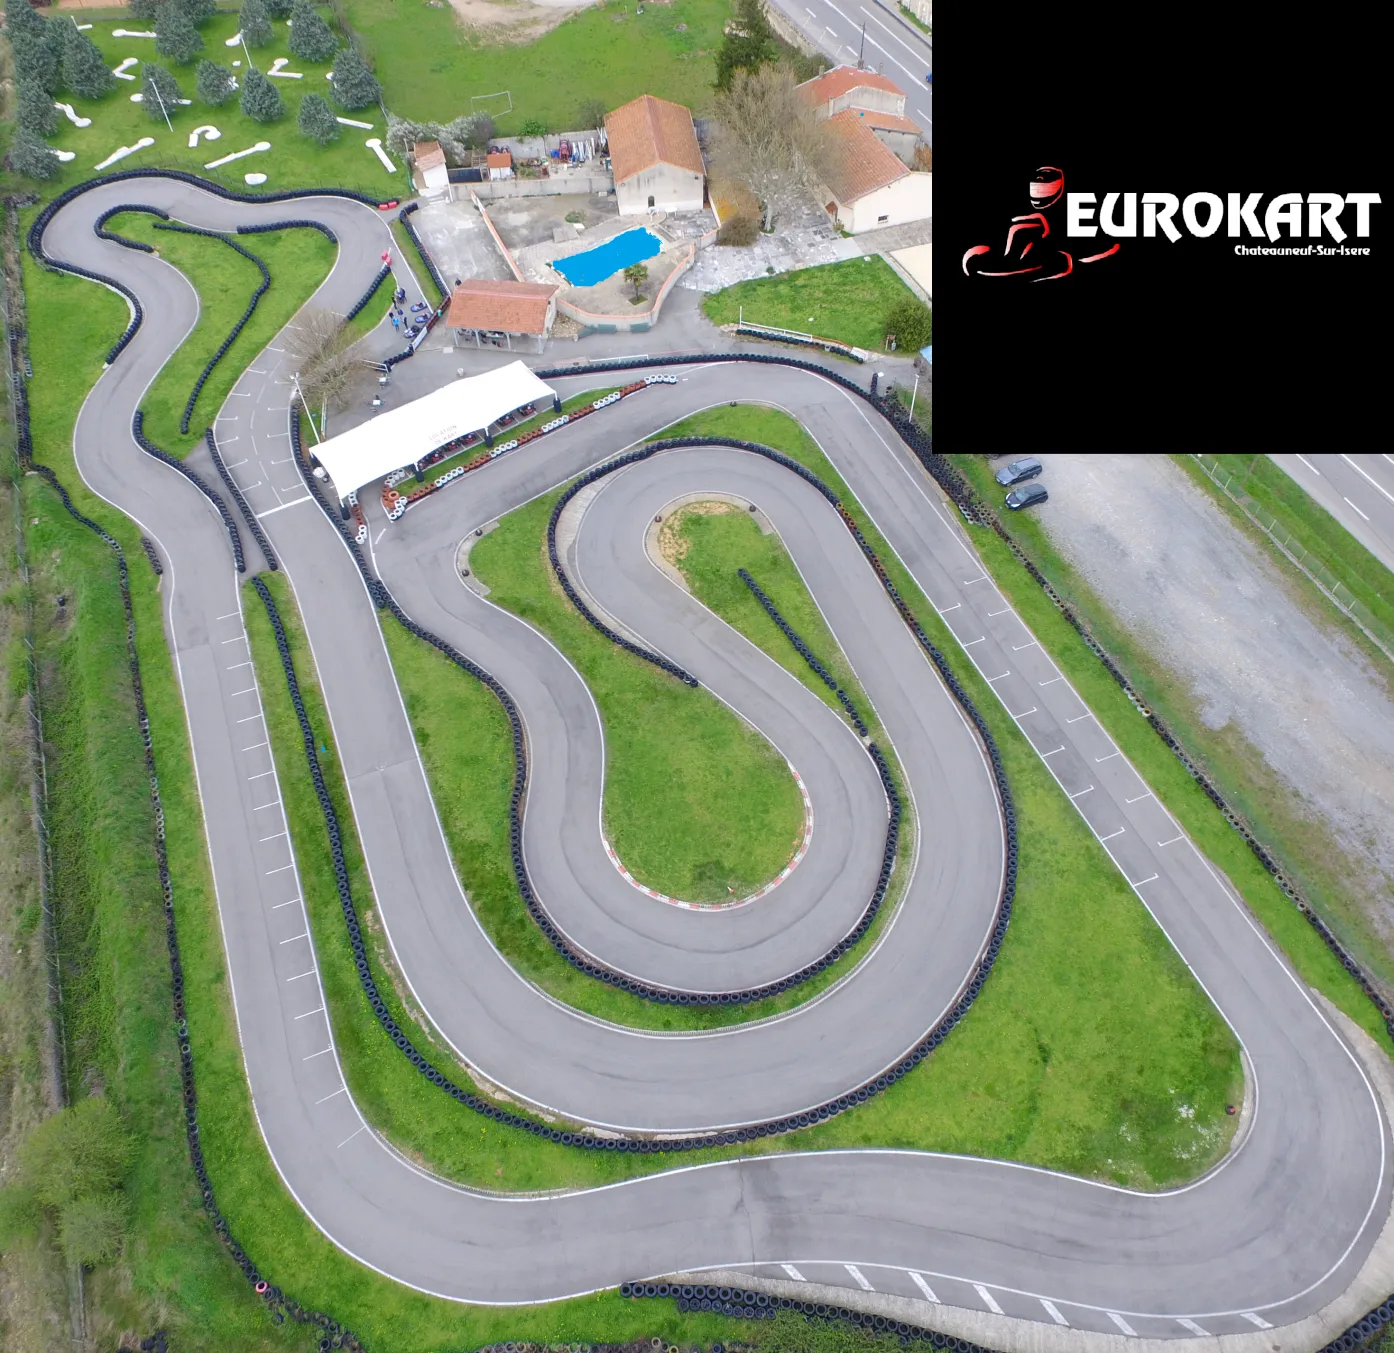 Découvrez notre circuit de karting à Châteauneuf-sur-Isère